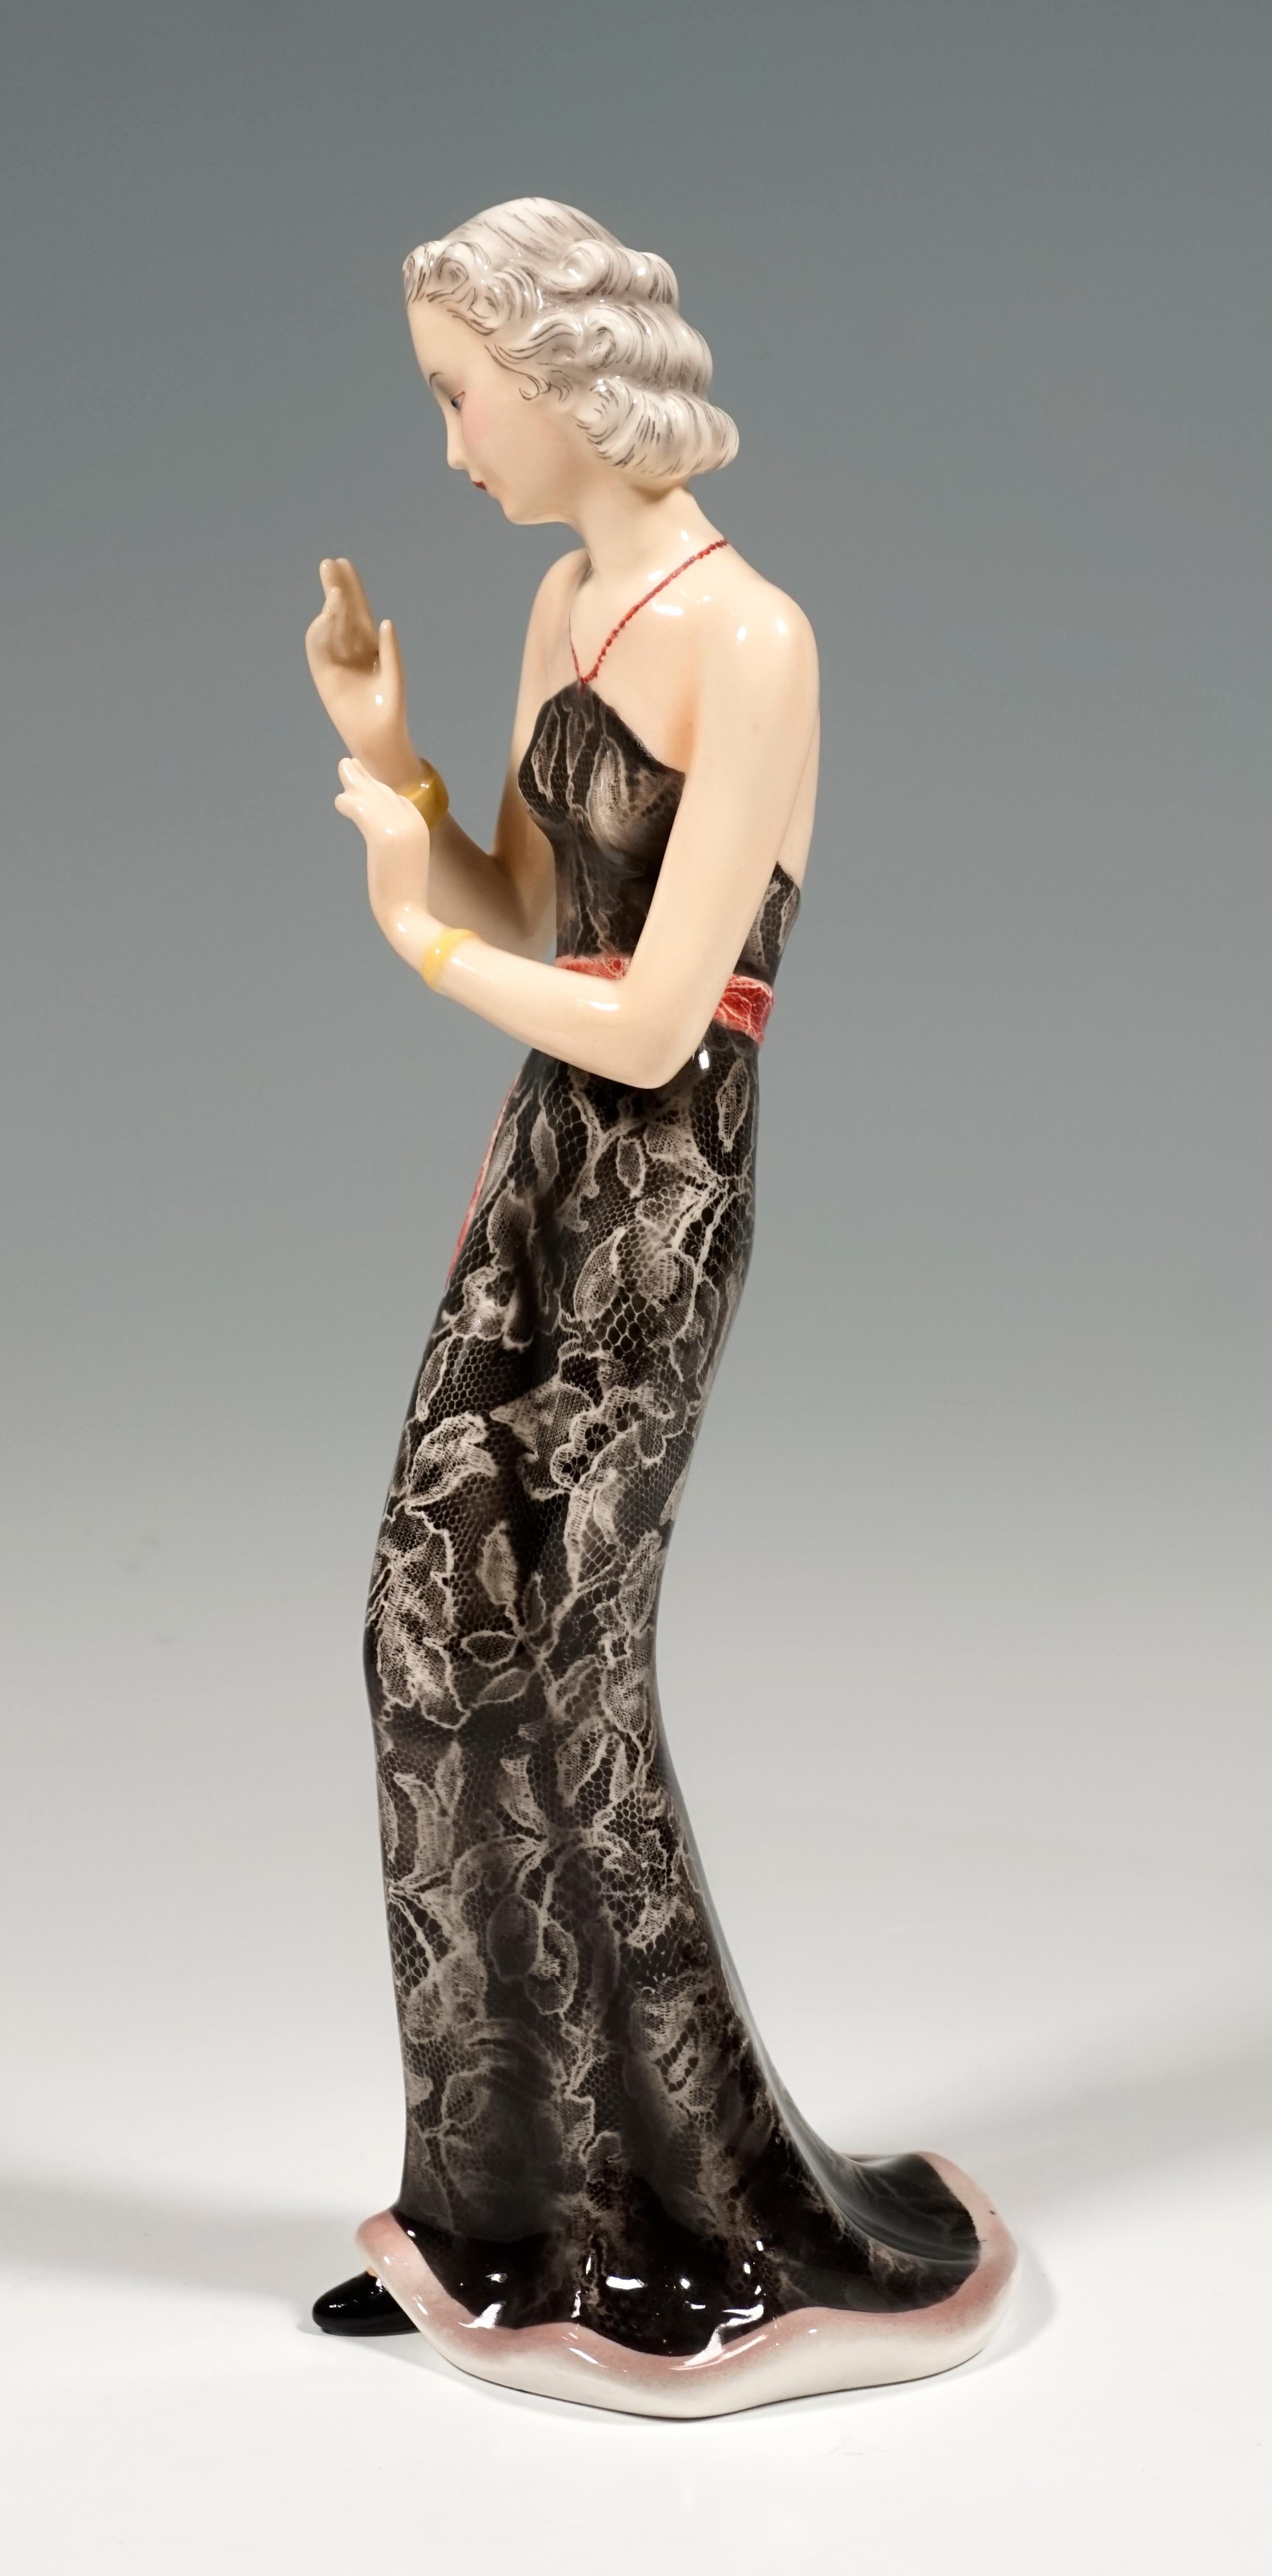 Représentation d'une dame élégante aux cheveux soigneusement épinglés, portant une longue robe moulante en dentelle noire sans bretelles, décolletée dans le dos, avec une longue ceinture rouge, tenant ses bras devant elle dans un geste élégant. On